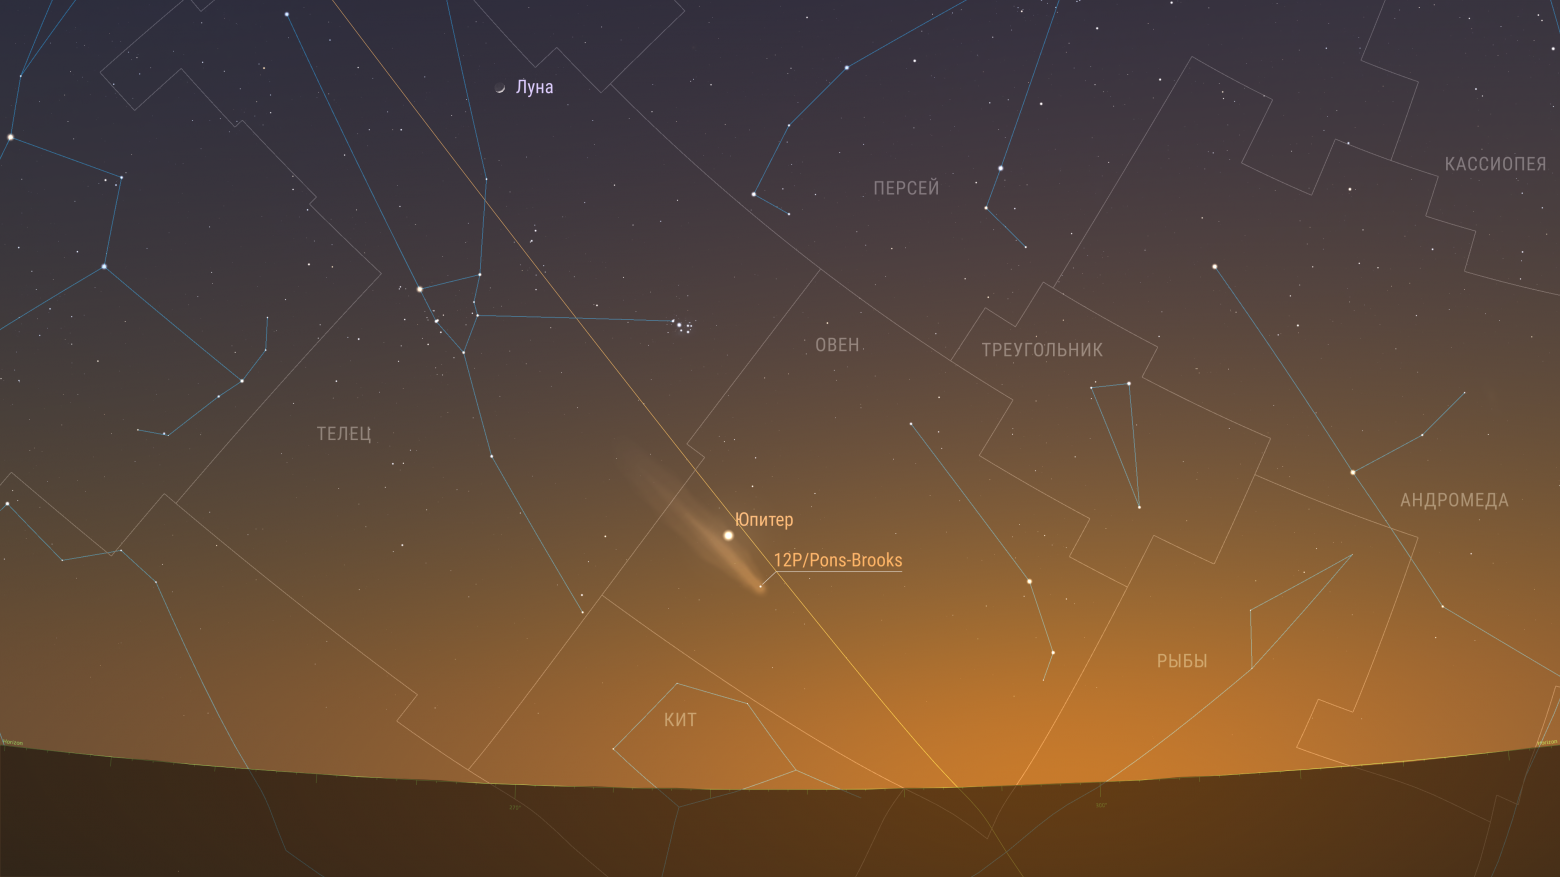 Комета продолжает движение по созвездию Овна и постепенно сближается с Юпитером. Предполагаемая звездная величина 3,80m. Элонгация 23 градуса. Комета расположилась так, что её хвост тянется в сторону Юпитера, и если бы в яркой заре это можно было бы сфотографировать, Юпитер оказался бы в самой гуще кометного хвоста. В реальности же хвост кометы до Юпитера не достает, и вообще не в ту сторону тянется. Просто, так видно с Земли.